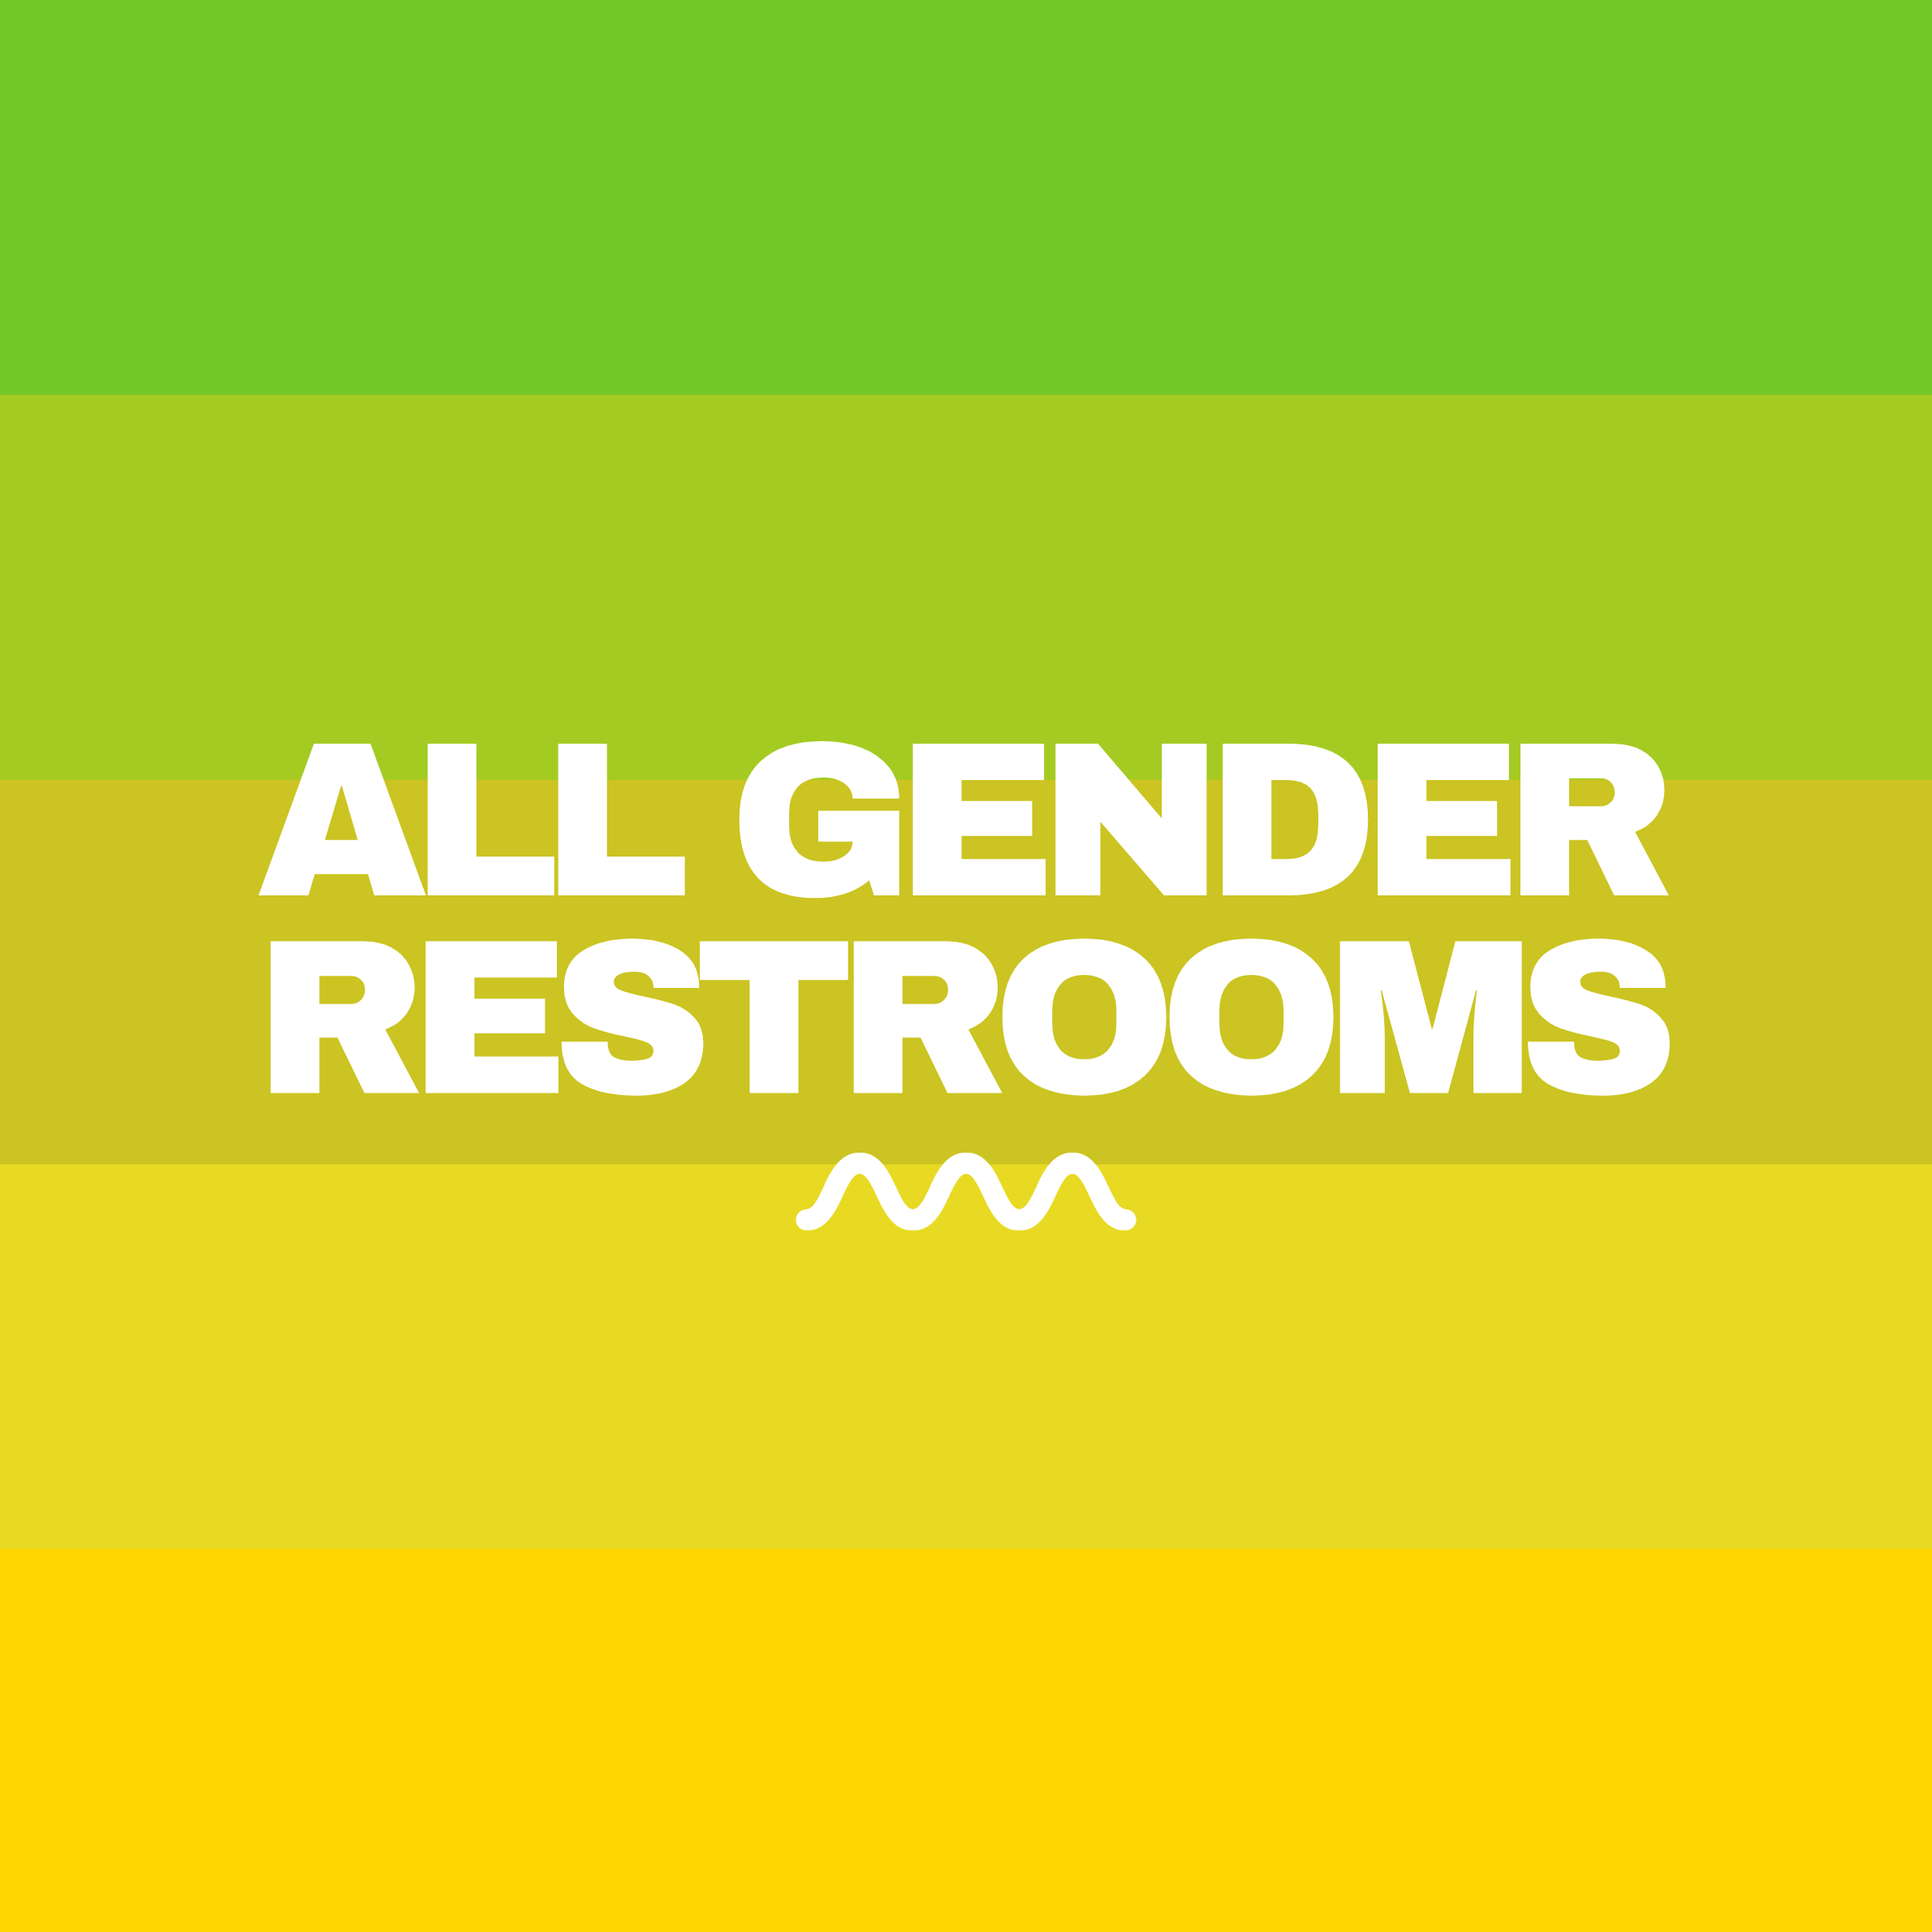 All Gender Restrooms